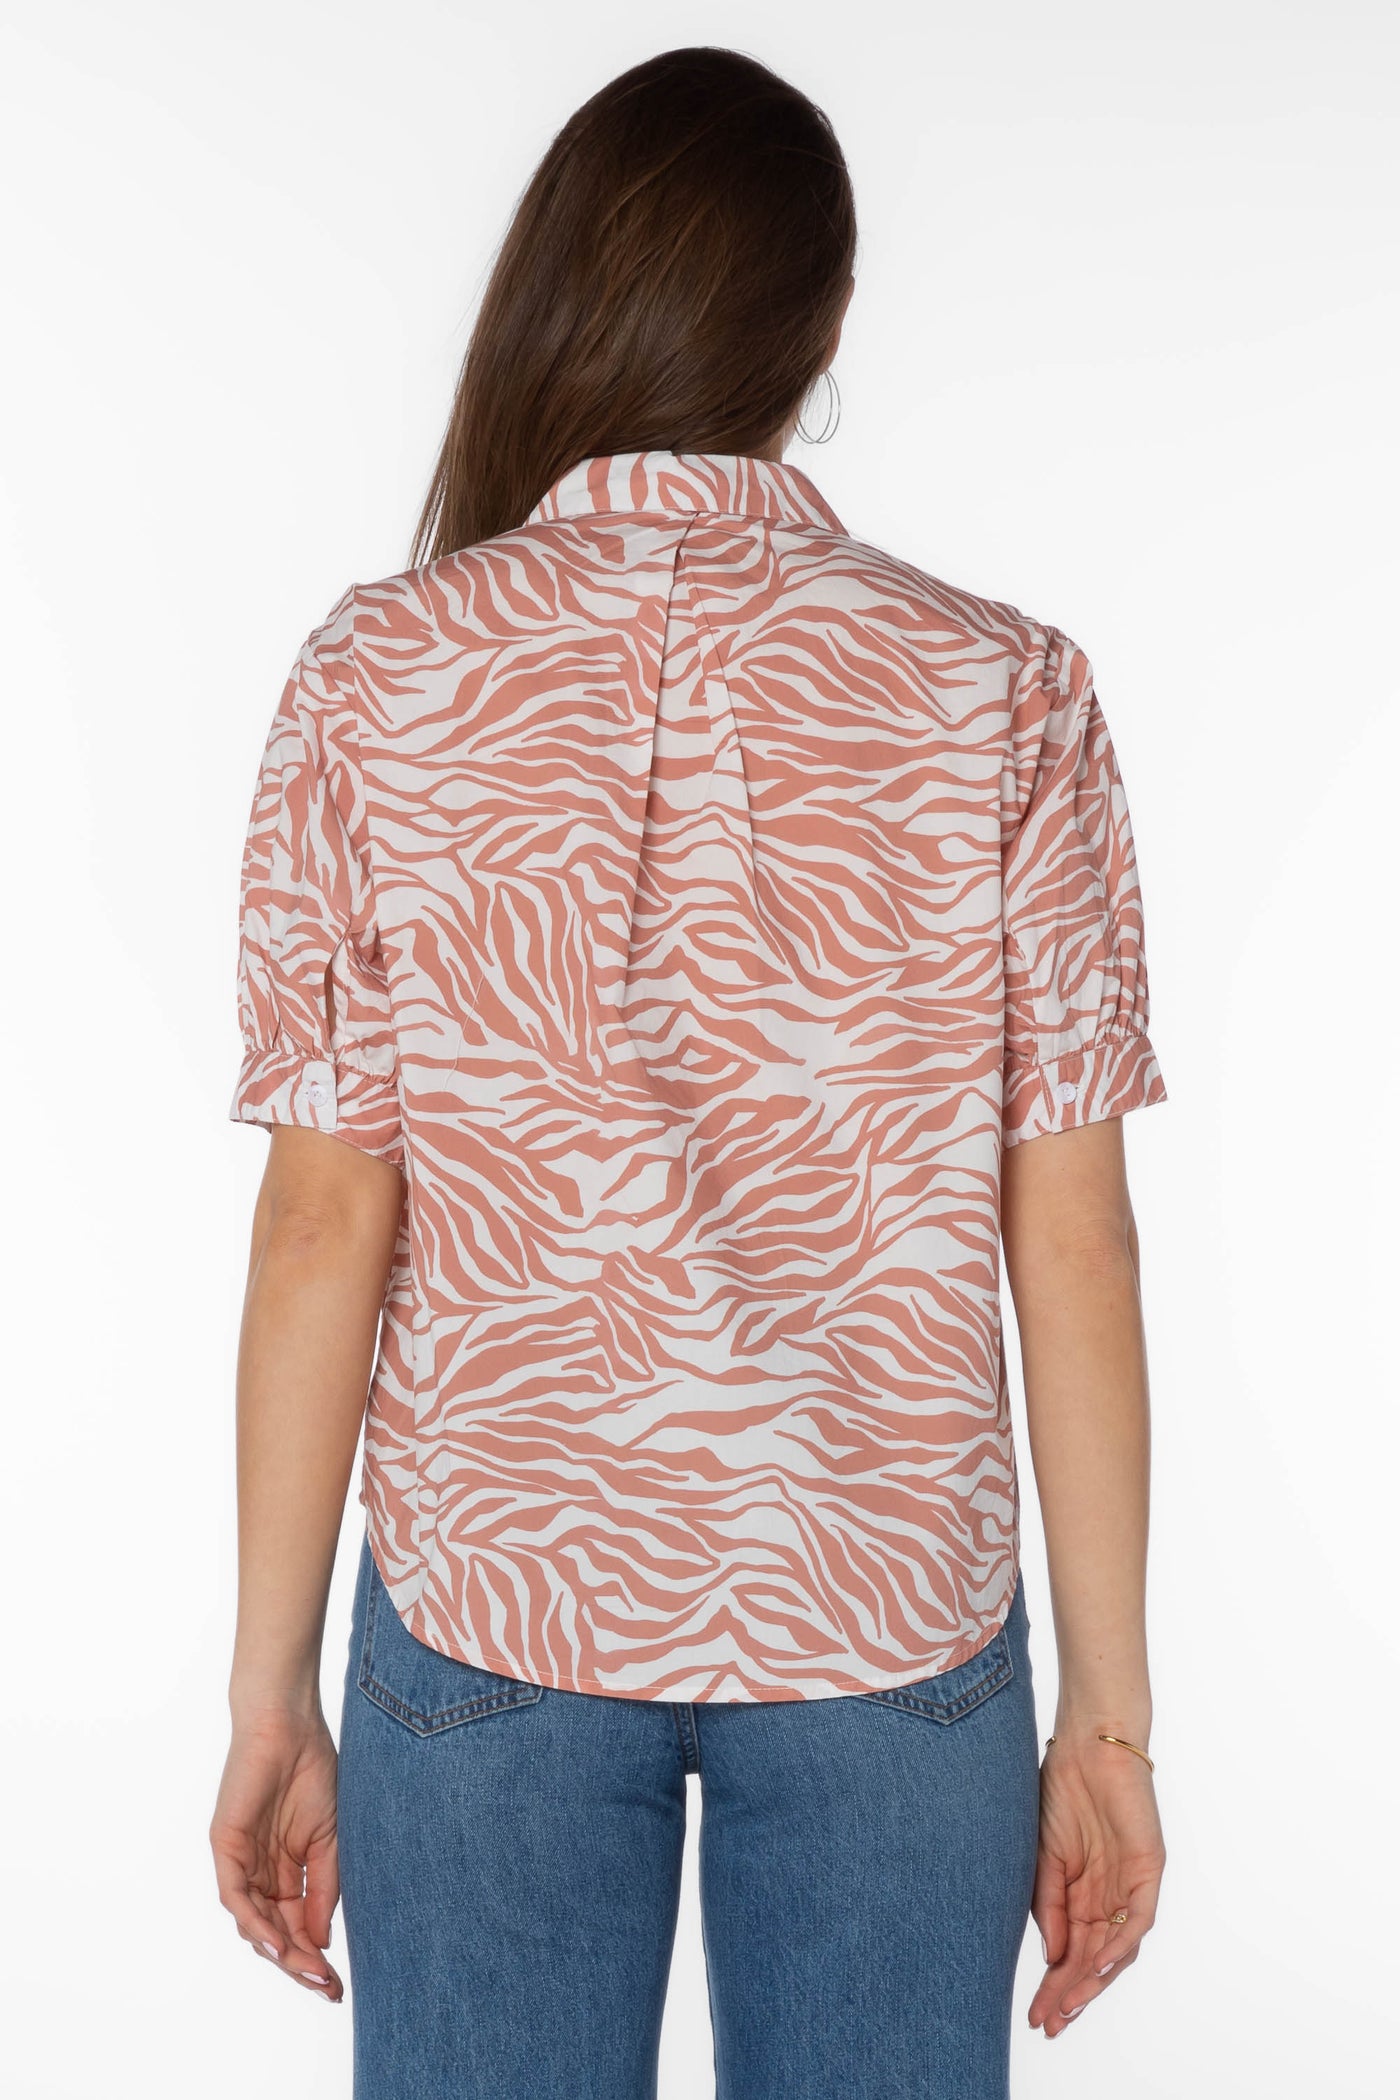 Pippen Zebra Shirt - Tops - Velvet Heart Clothing